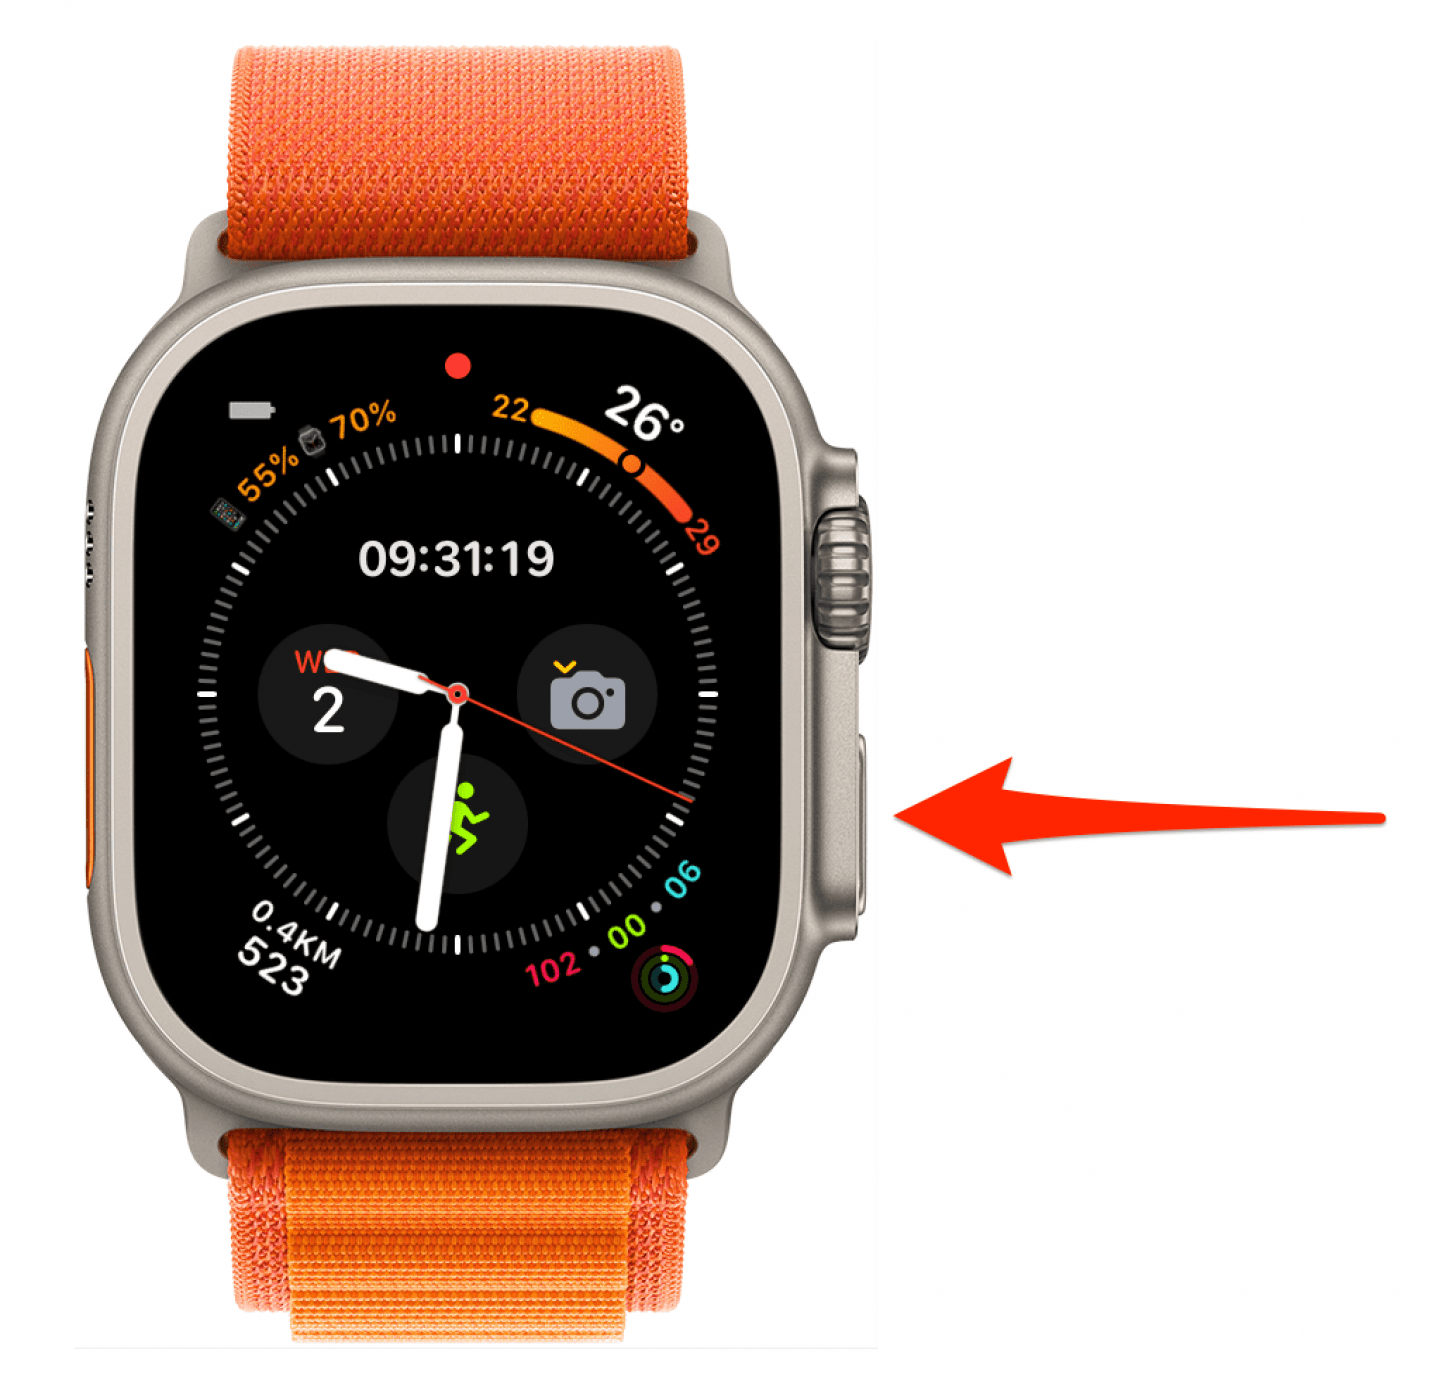 Reinicie su Apple Watch presionando y manteniendo presionado el botón lateral hasta que aparezca el menú con el botón de apagado.